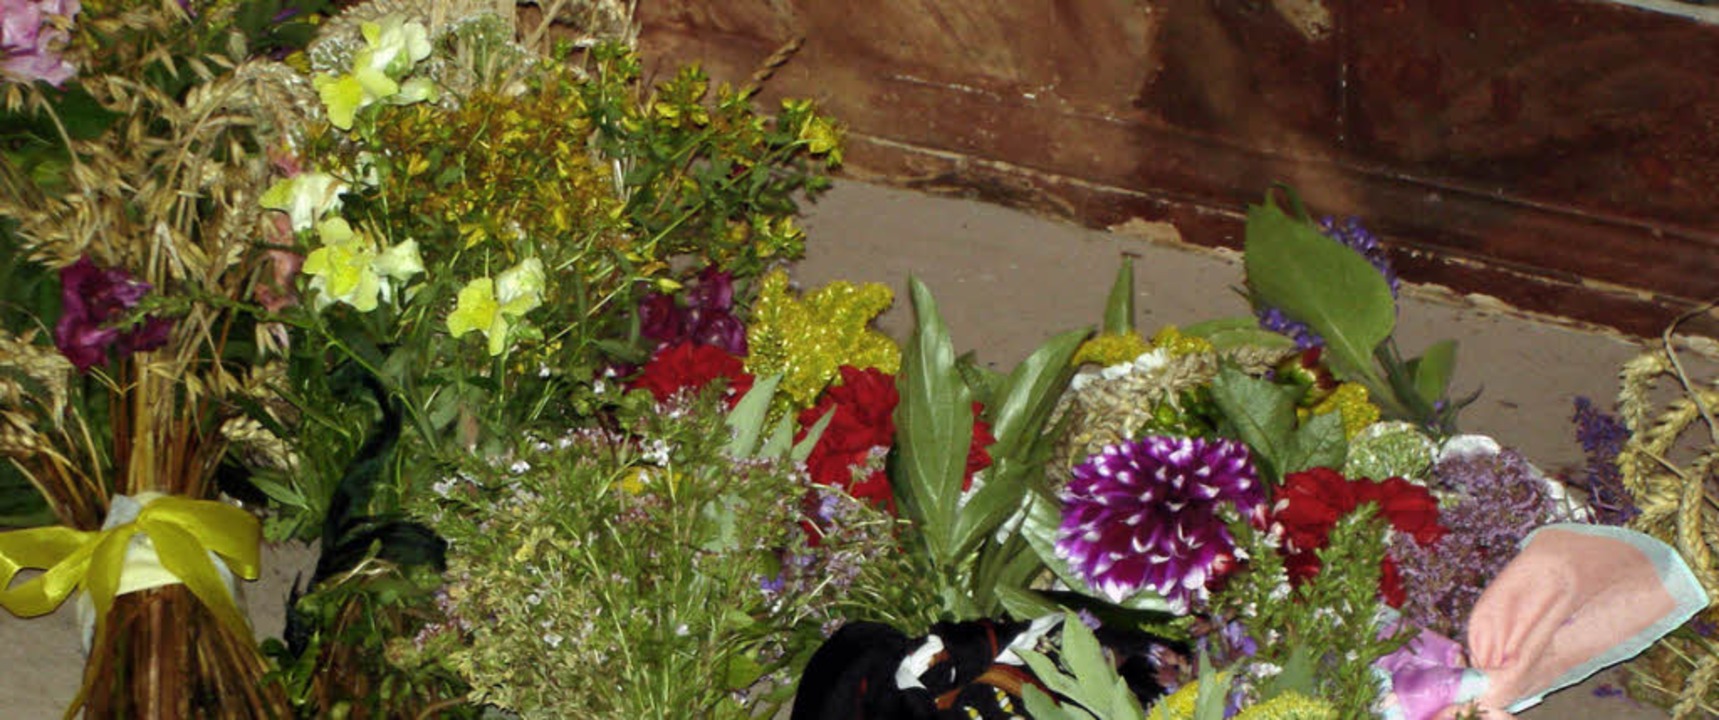 Mehr als 30 Kräuter- und Blumengebinde...ltar niedergelegt, ein schöner Brauch.  | Foto: Erhard Morath